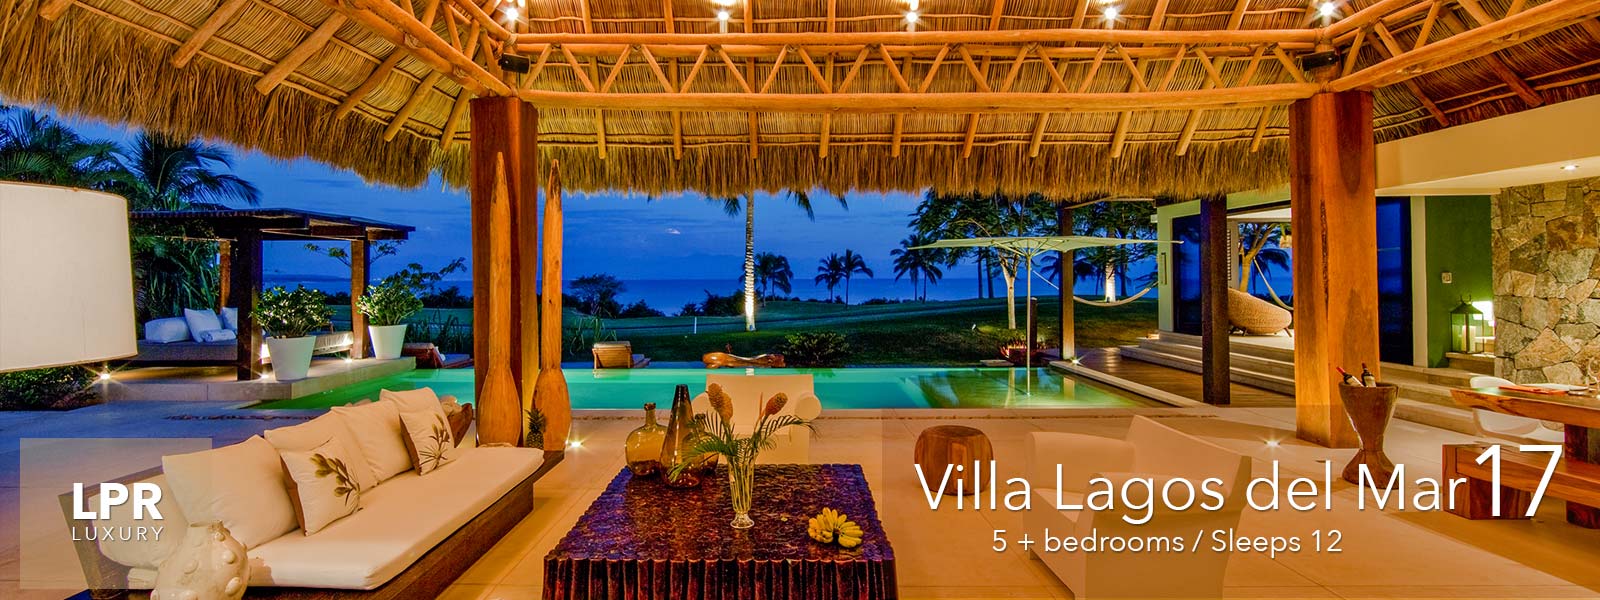 Villa Lagos del Mar 17 - Luxury golf course vacation villa at the Punta Mita Resort, Riviera Nayarit, Mexico